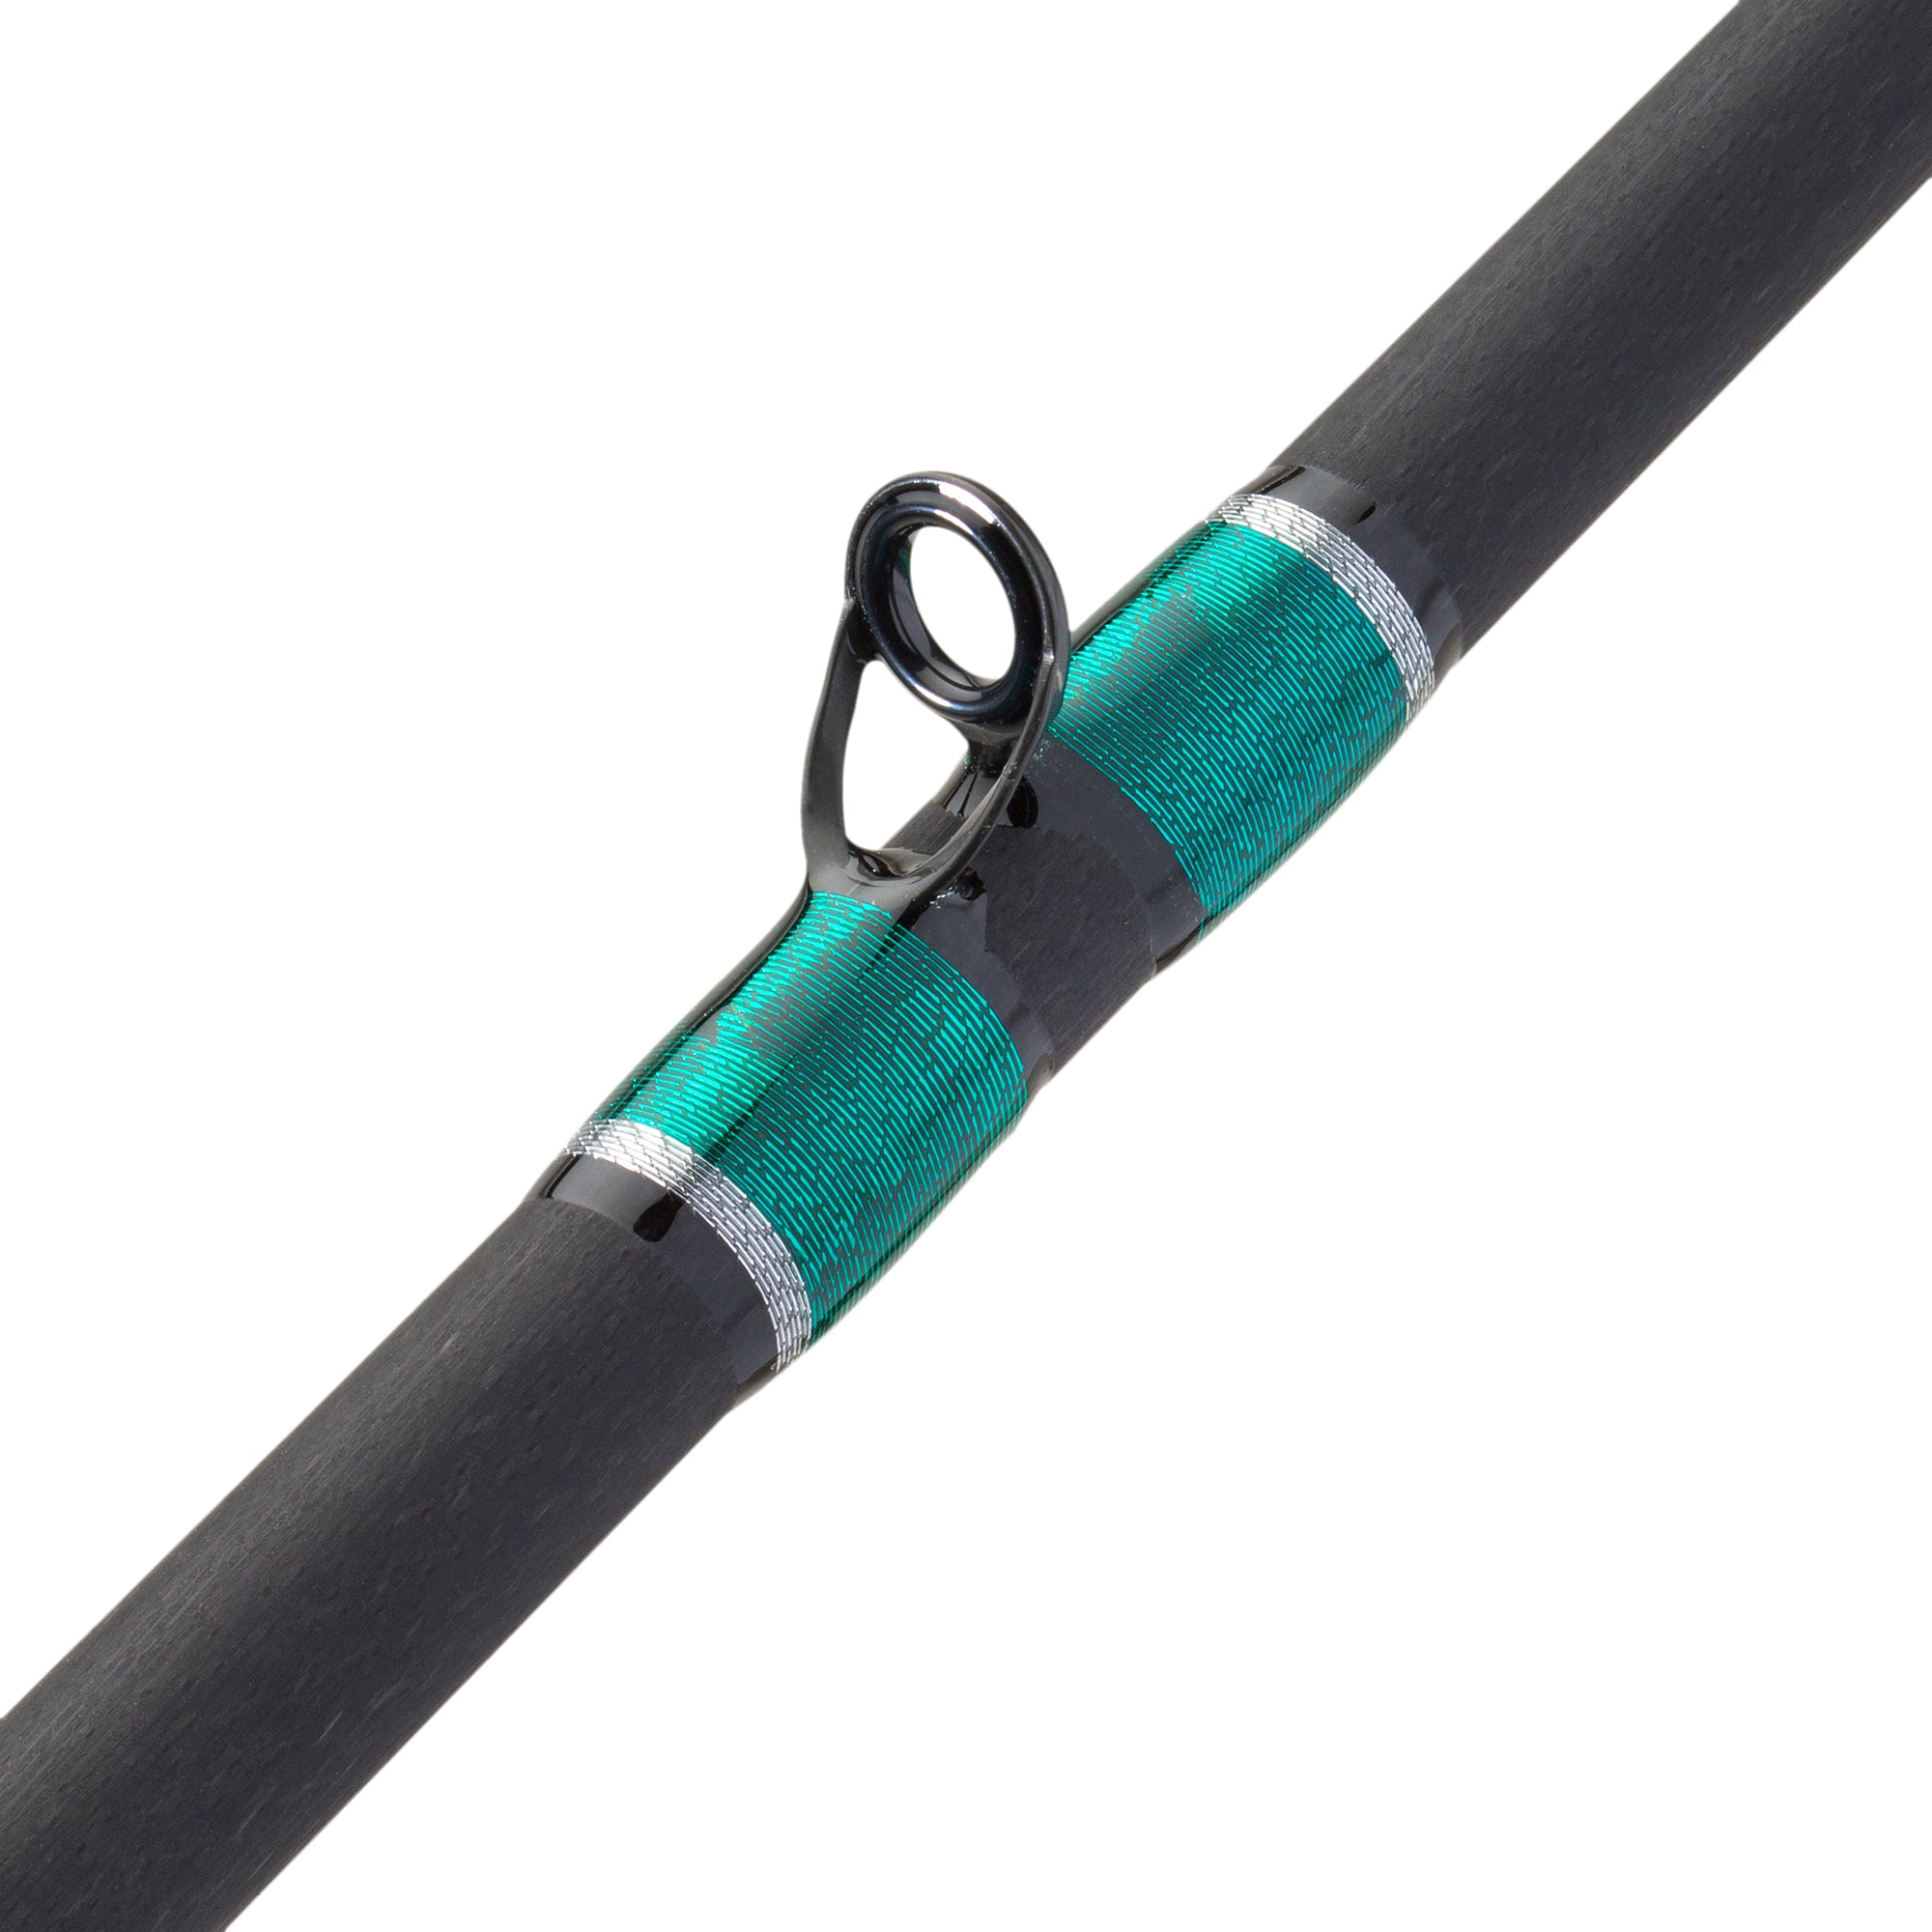 Hunt BFS Fishing Rods – KISTLER Fishing